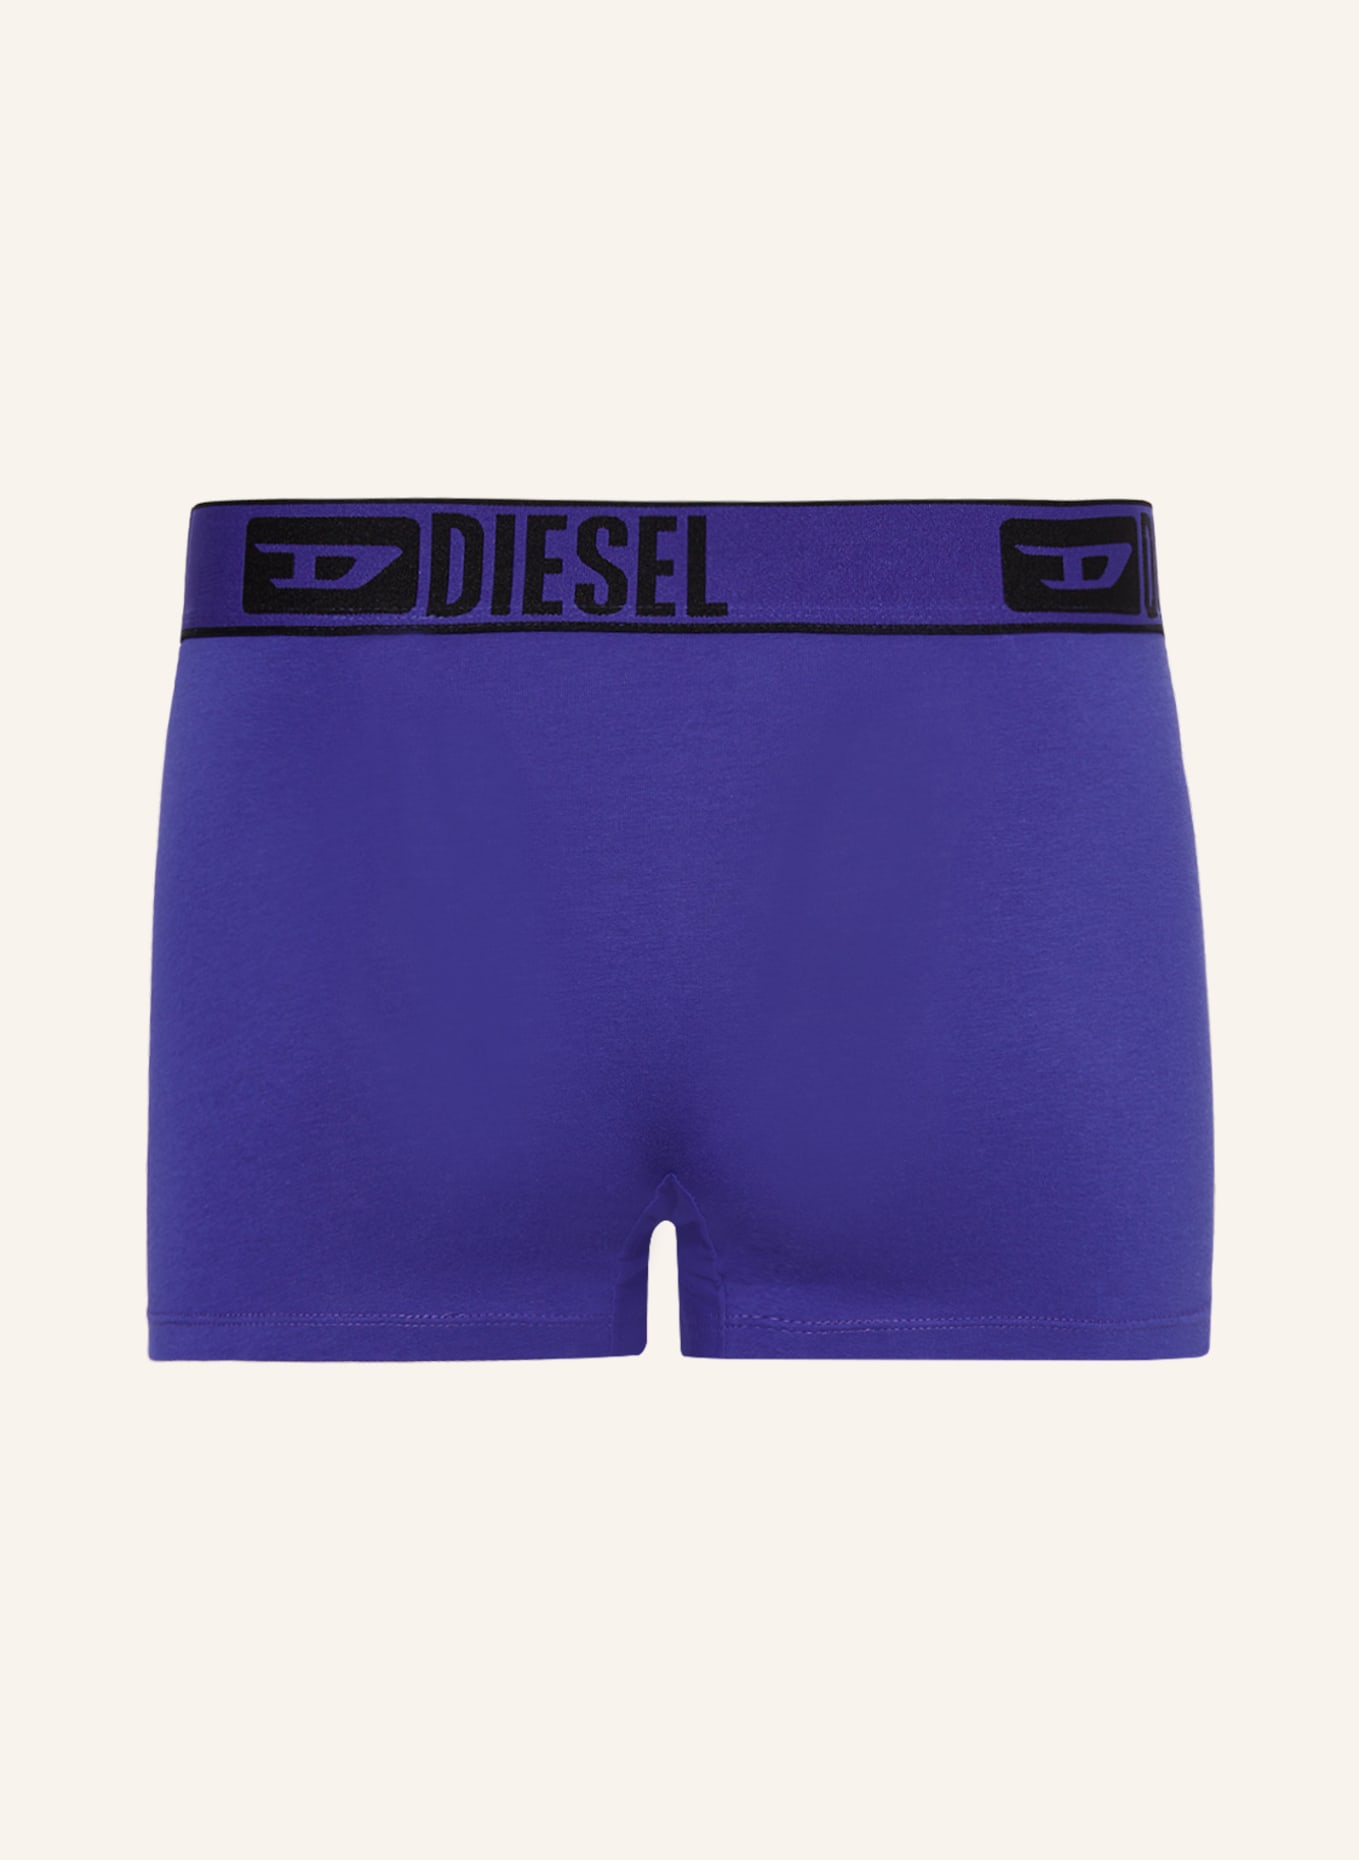 DIESEL 3-pack boxer shorts DAMIEN, Color: BLACK/ PINK/ BLUE (Image 2)